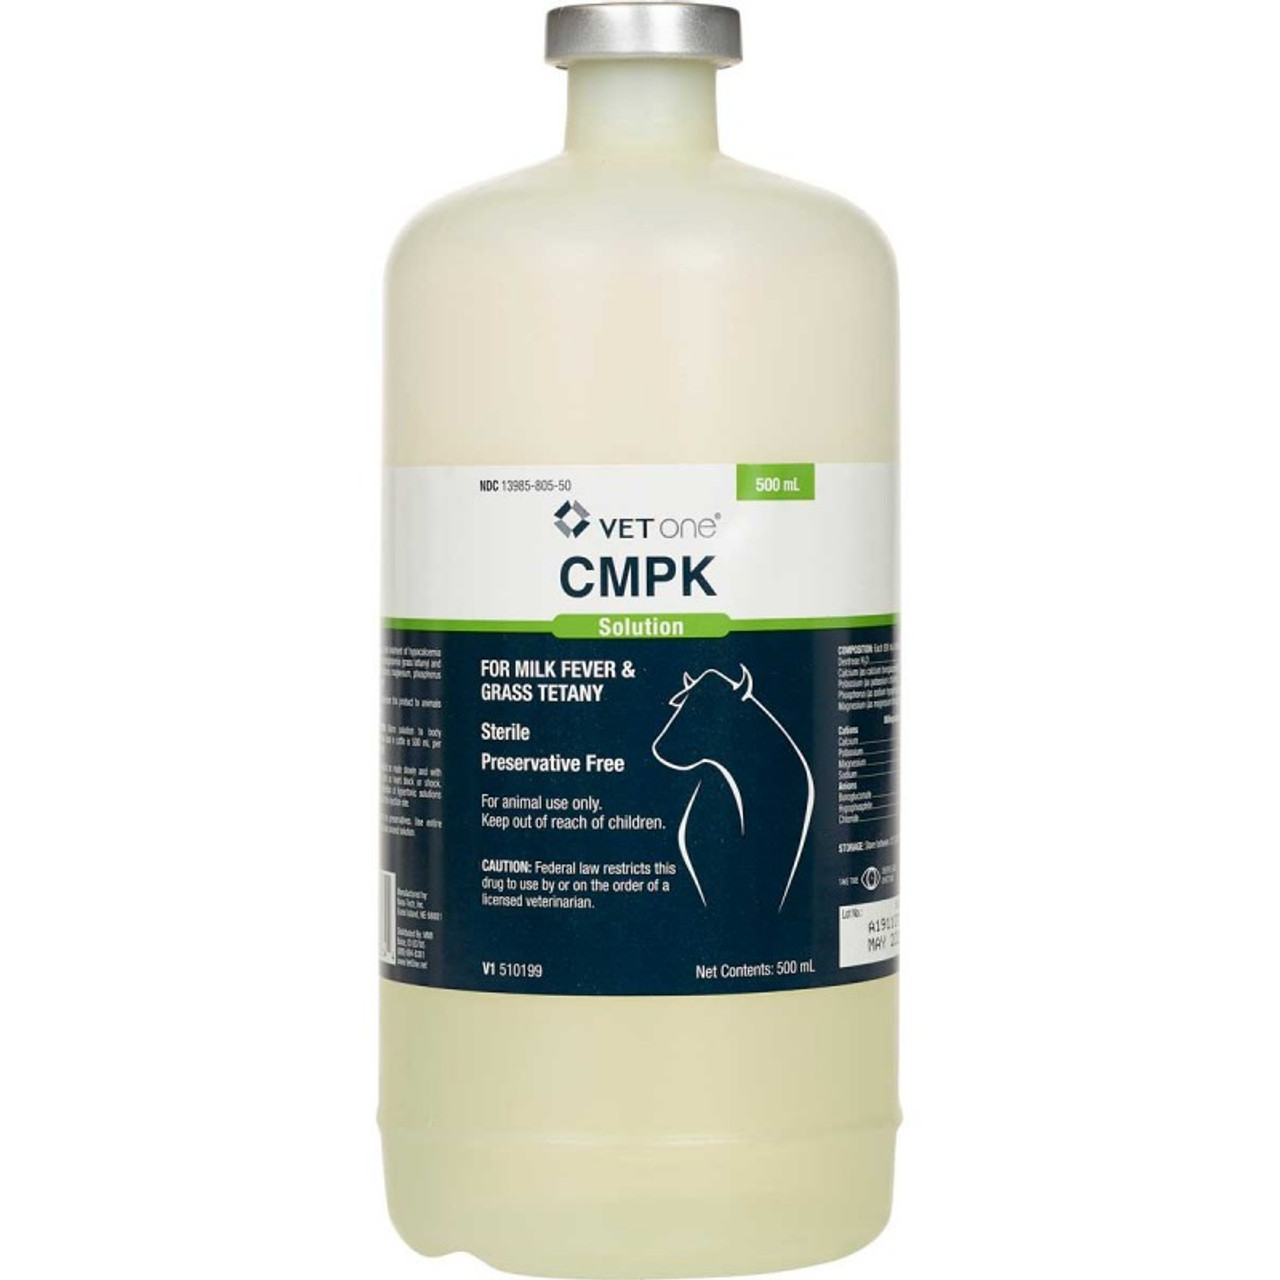 CMPK Solution 500mL - Prescription Required